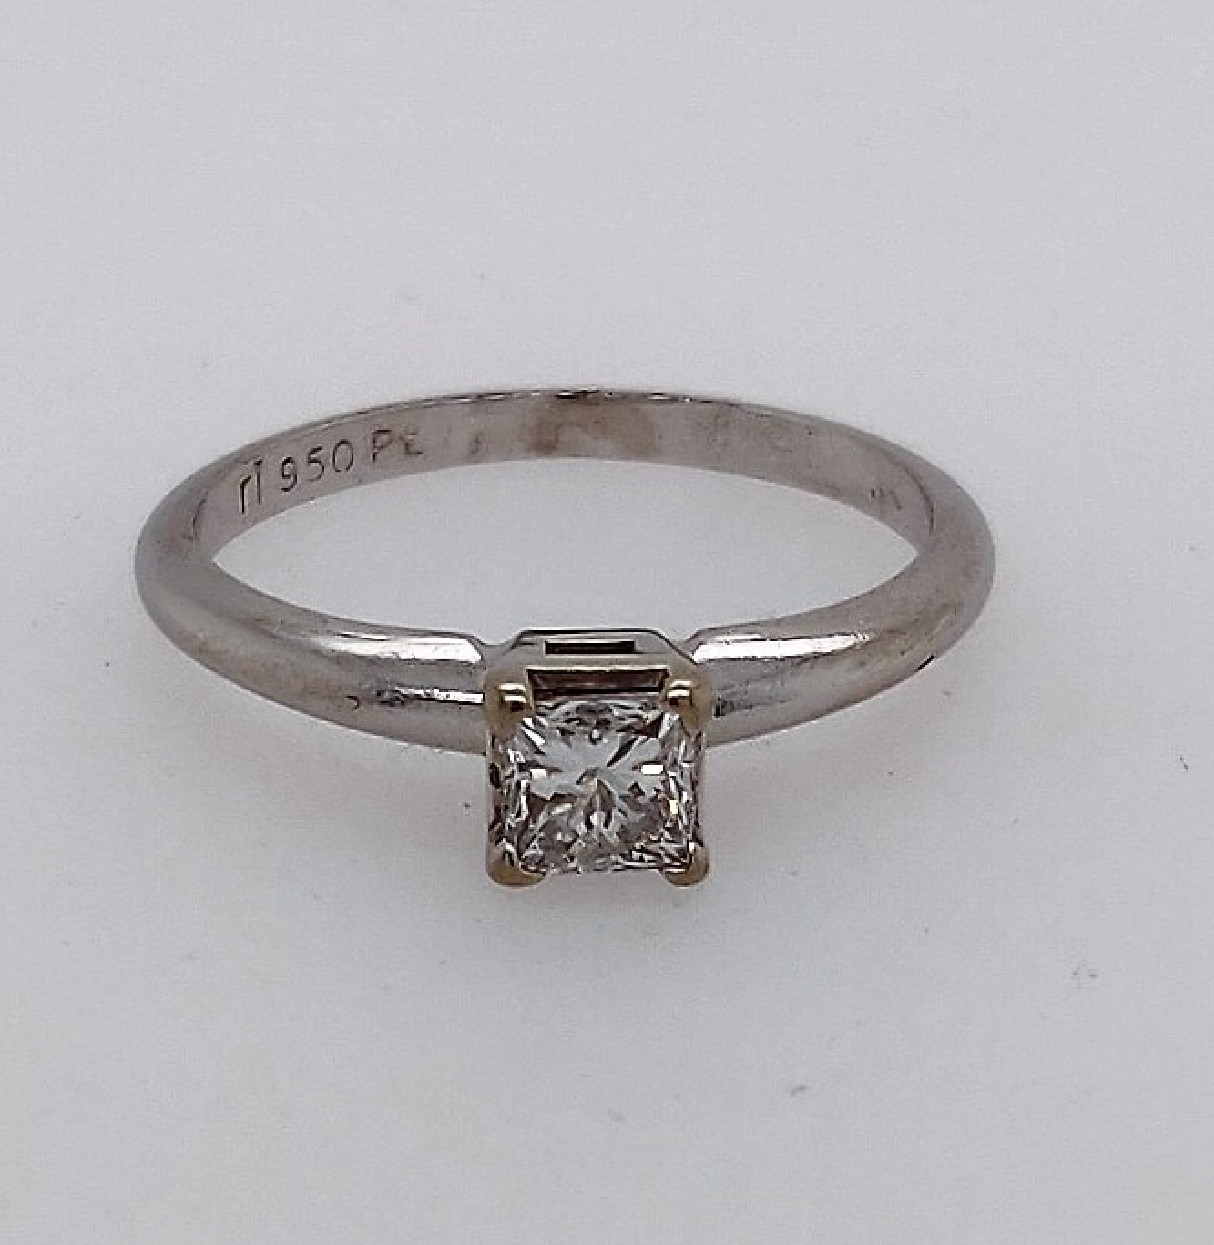 Platinum solitaire engagement ring w/ 0.45CTTW princess cut diamond. Size 6.